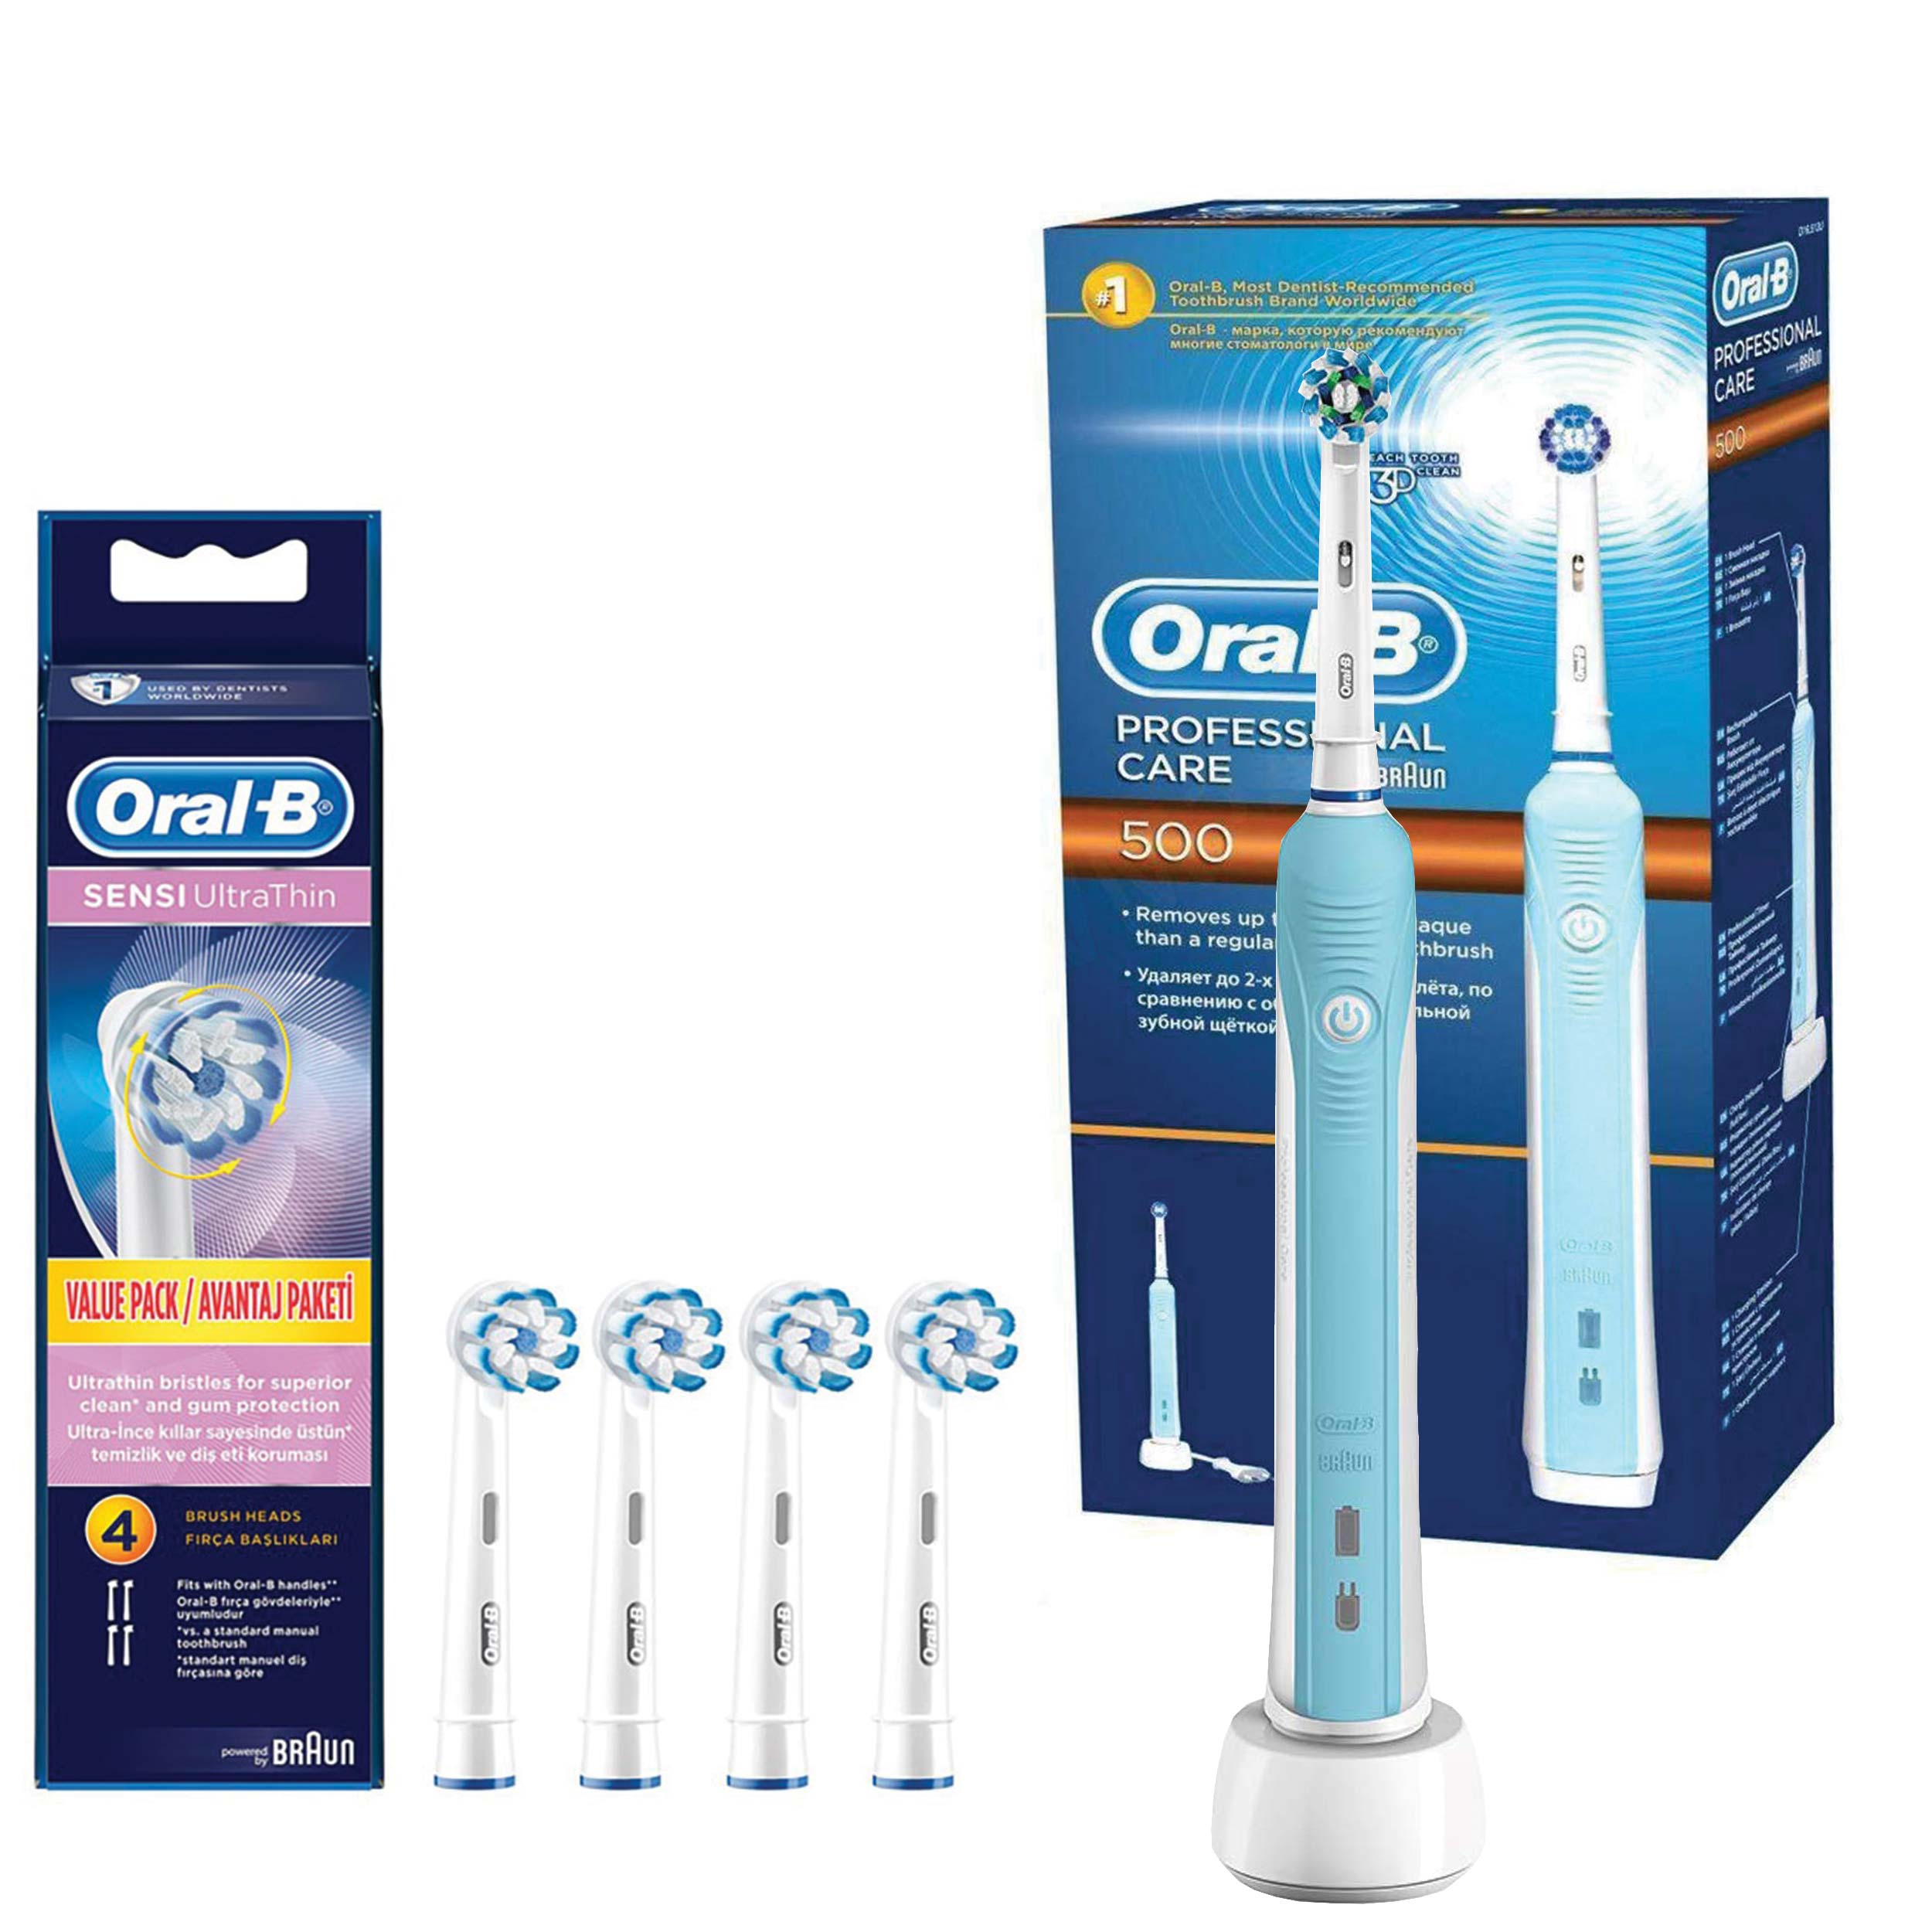 مسواک برقی اورال-بی مدل Professional Care 500 به همراه سری یدک مسواک برقی اورال بی مدل Oral-B Sensi UltraThin بسته 4 عددی